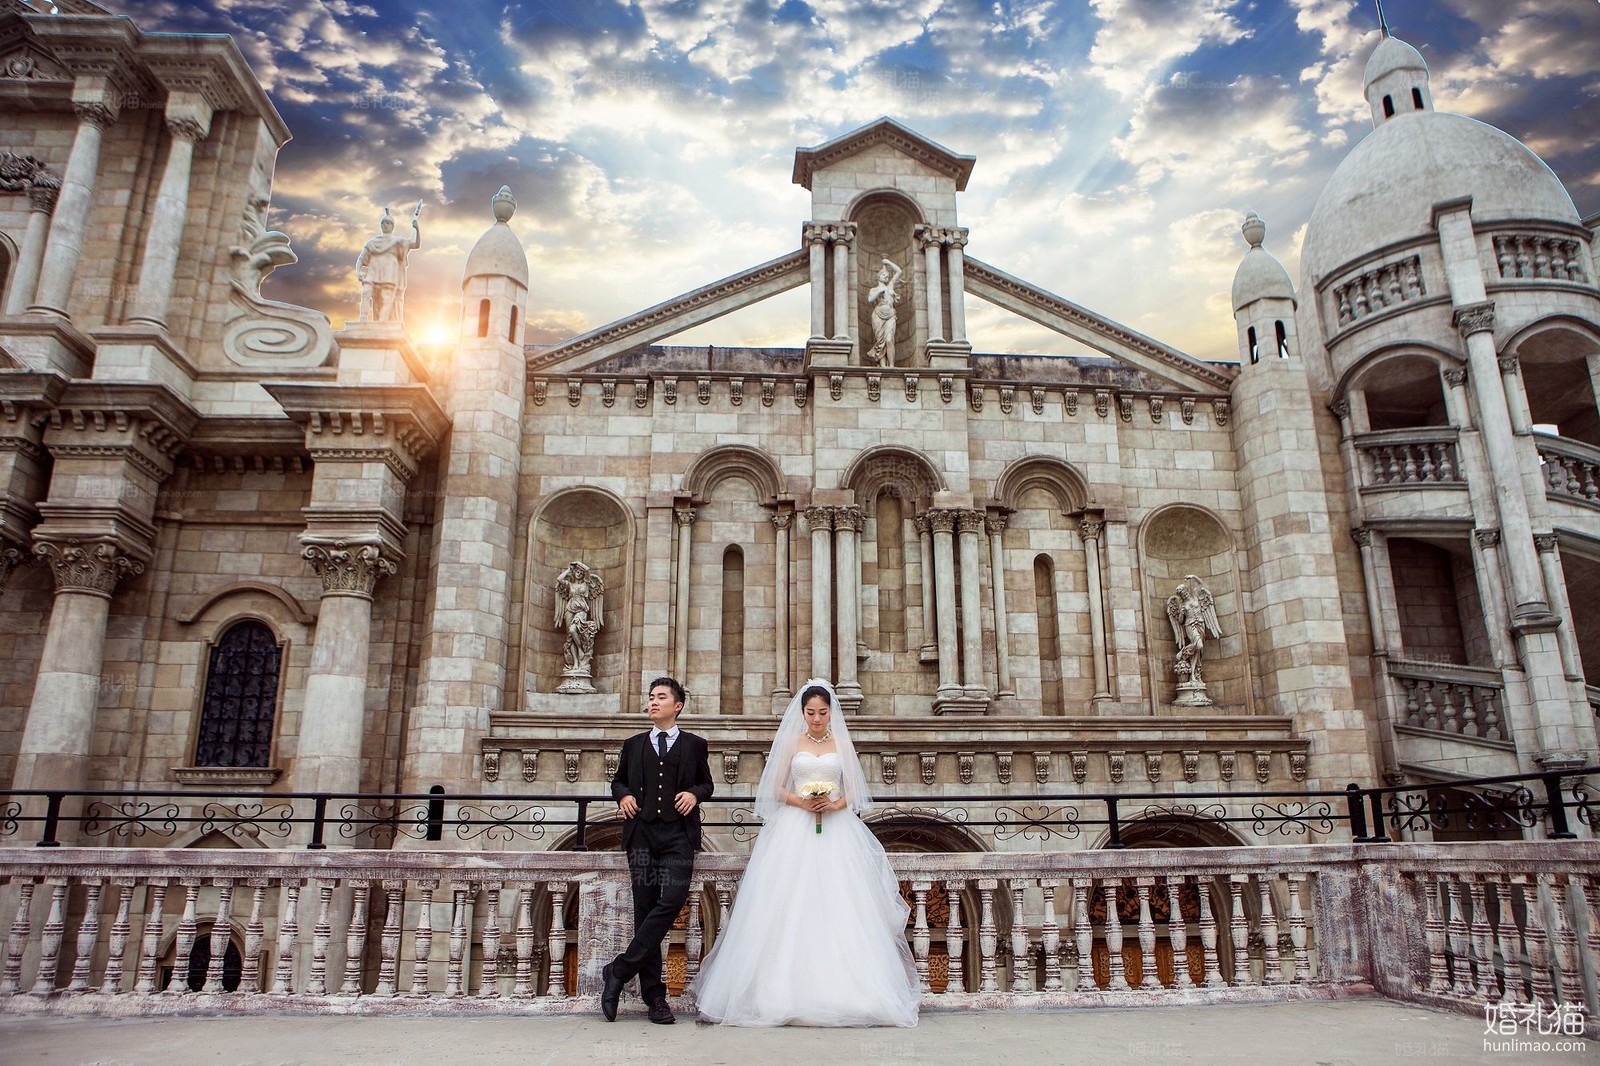 欧式婚纱摄影|城堡结婚照,[欧式, 城堡],佛山婚纱照,婚纱照图片